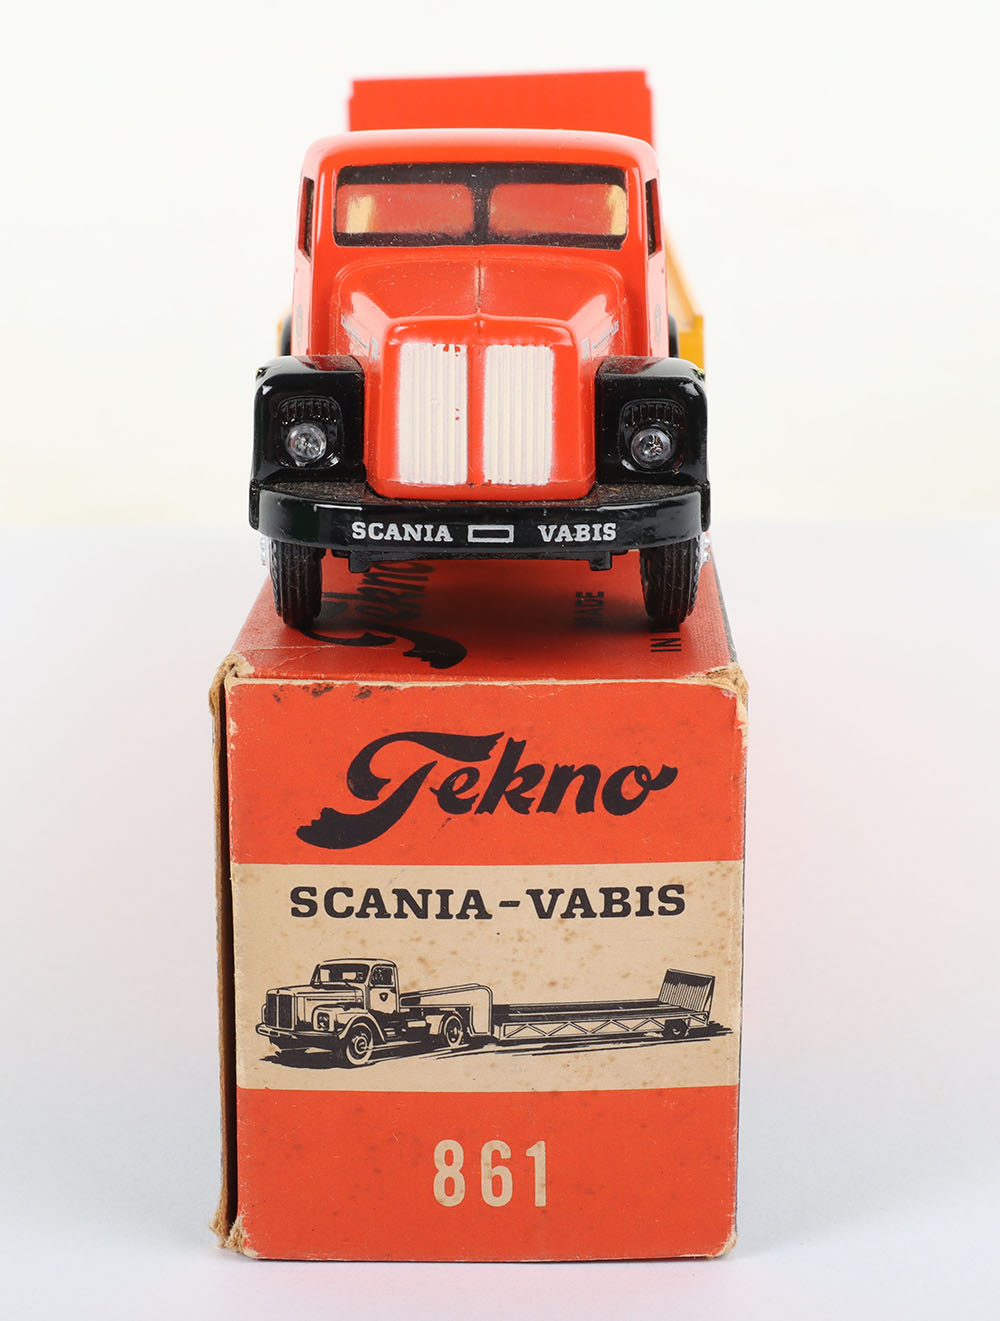 Tekno 861 Scania Vabis 75 Low Loader ‘Akerman’ - Image 5 of 6